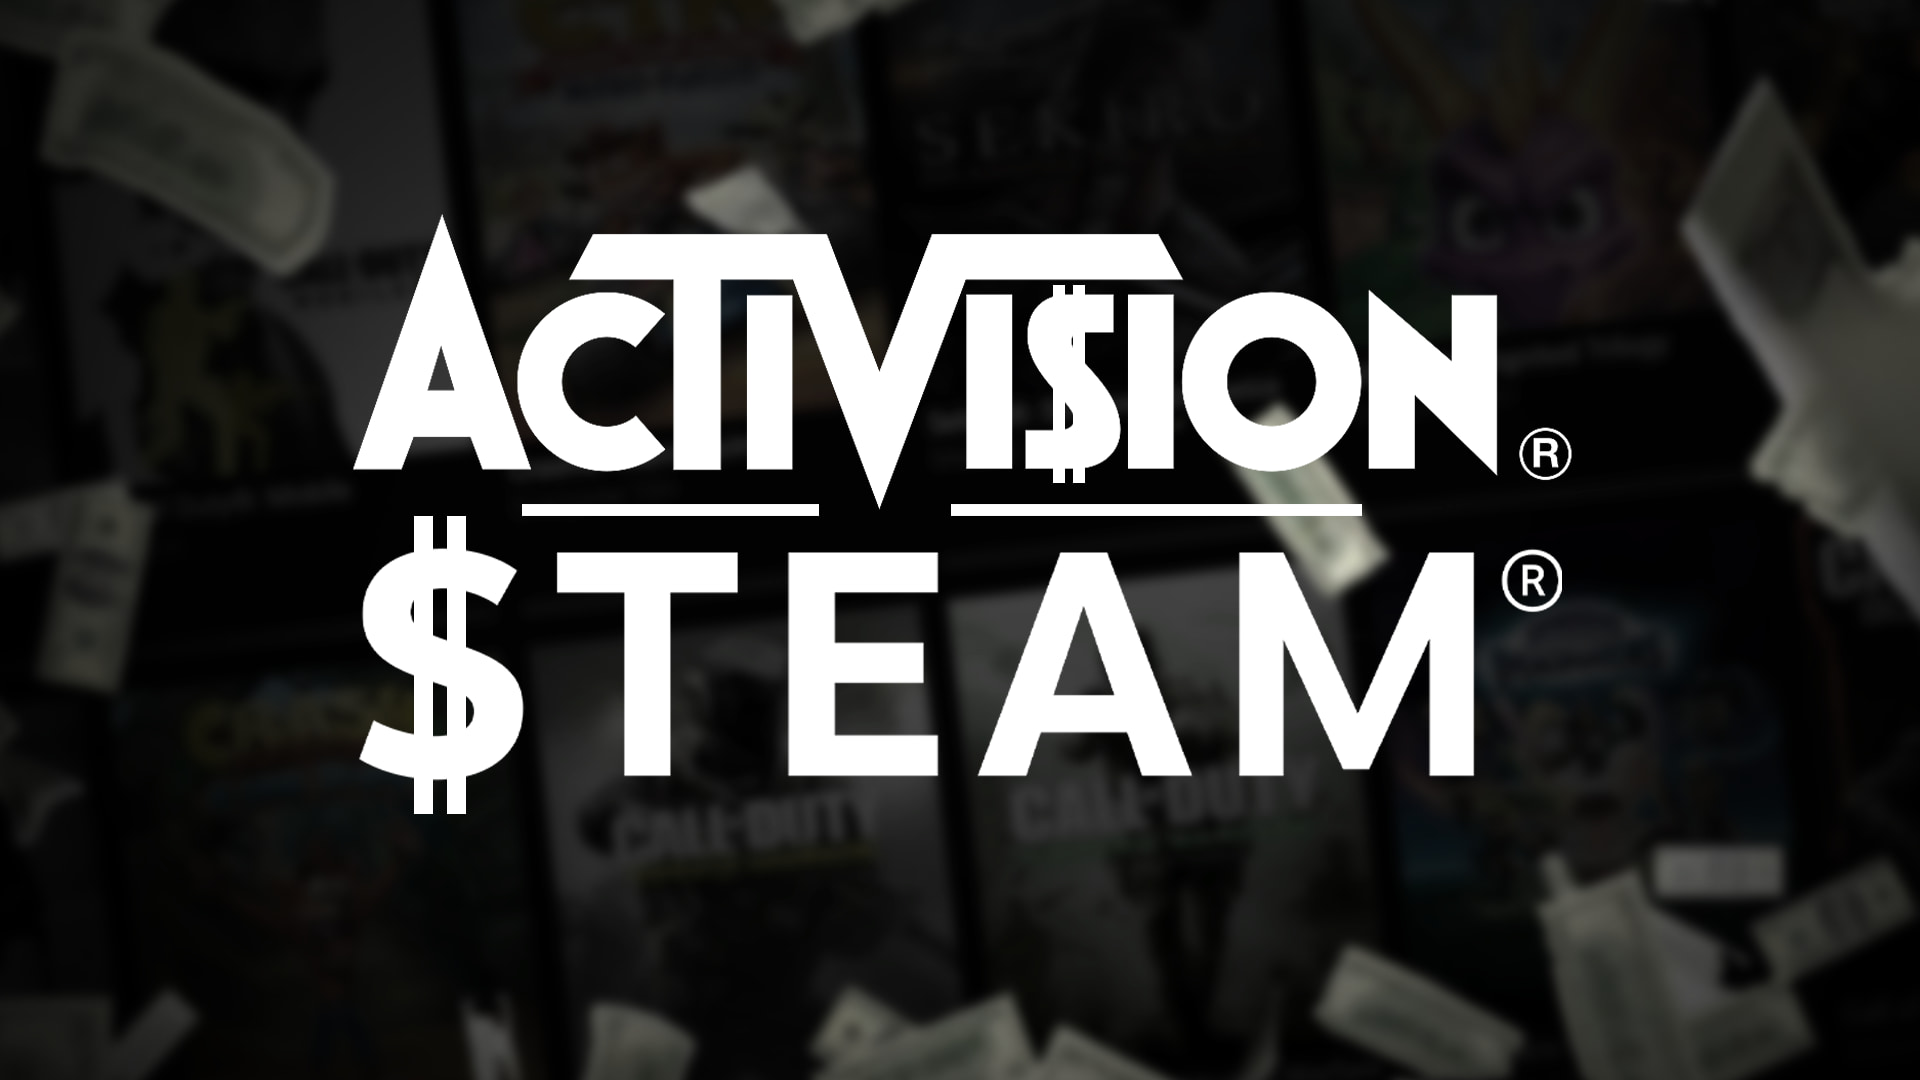 Jogos da Activision no Steam estão caros e vão continuar assim  Fórum  Adrenaline - Um dos maiores e mais ativos fóruns do Brasil